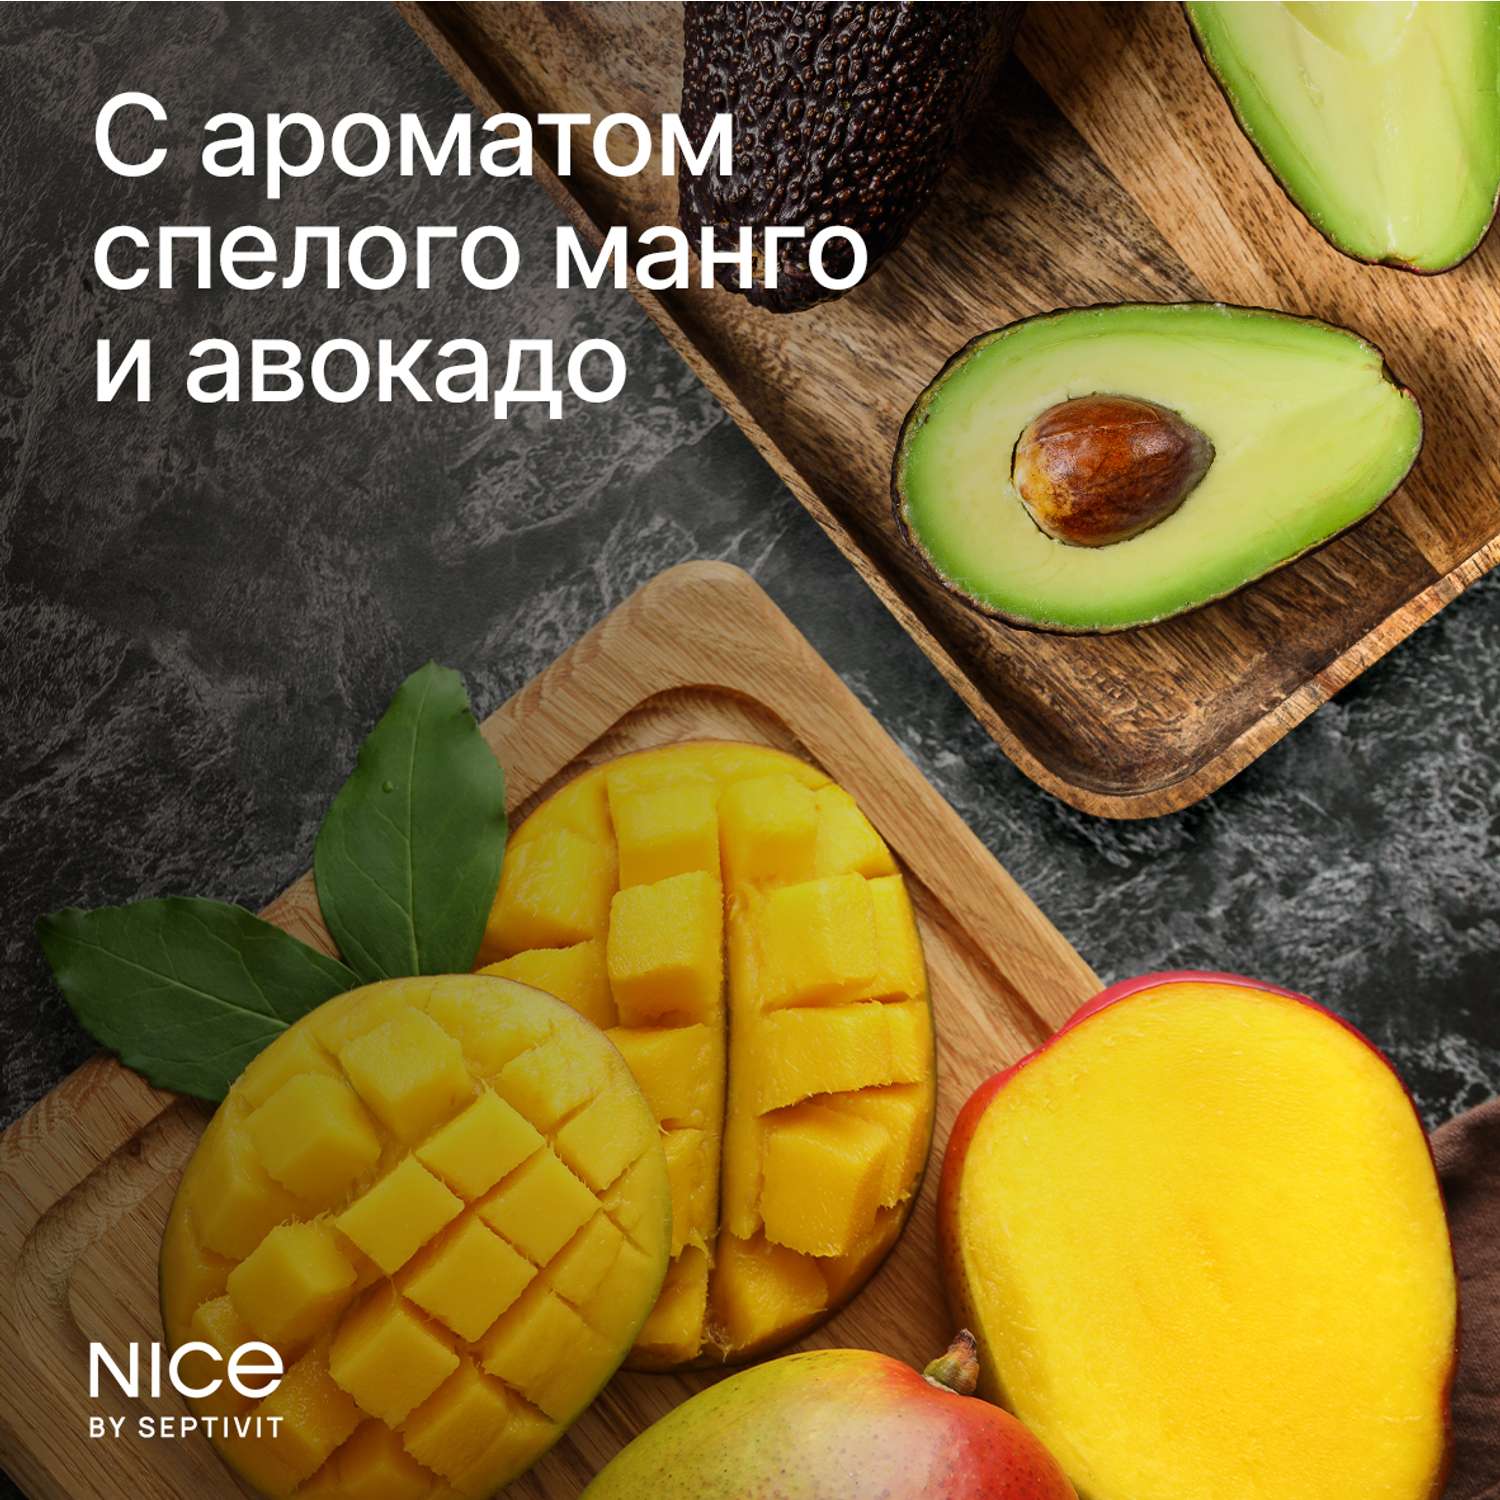 Жидкое мыло для рук NICE by Septivit с ароматом Авокадо-манго 5л - фото 3